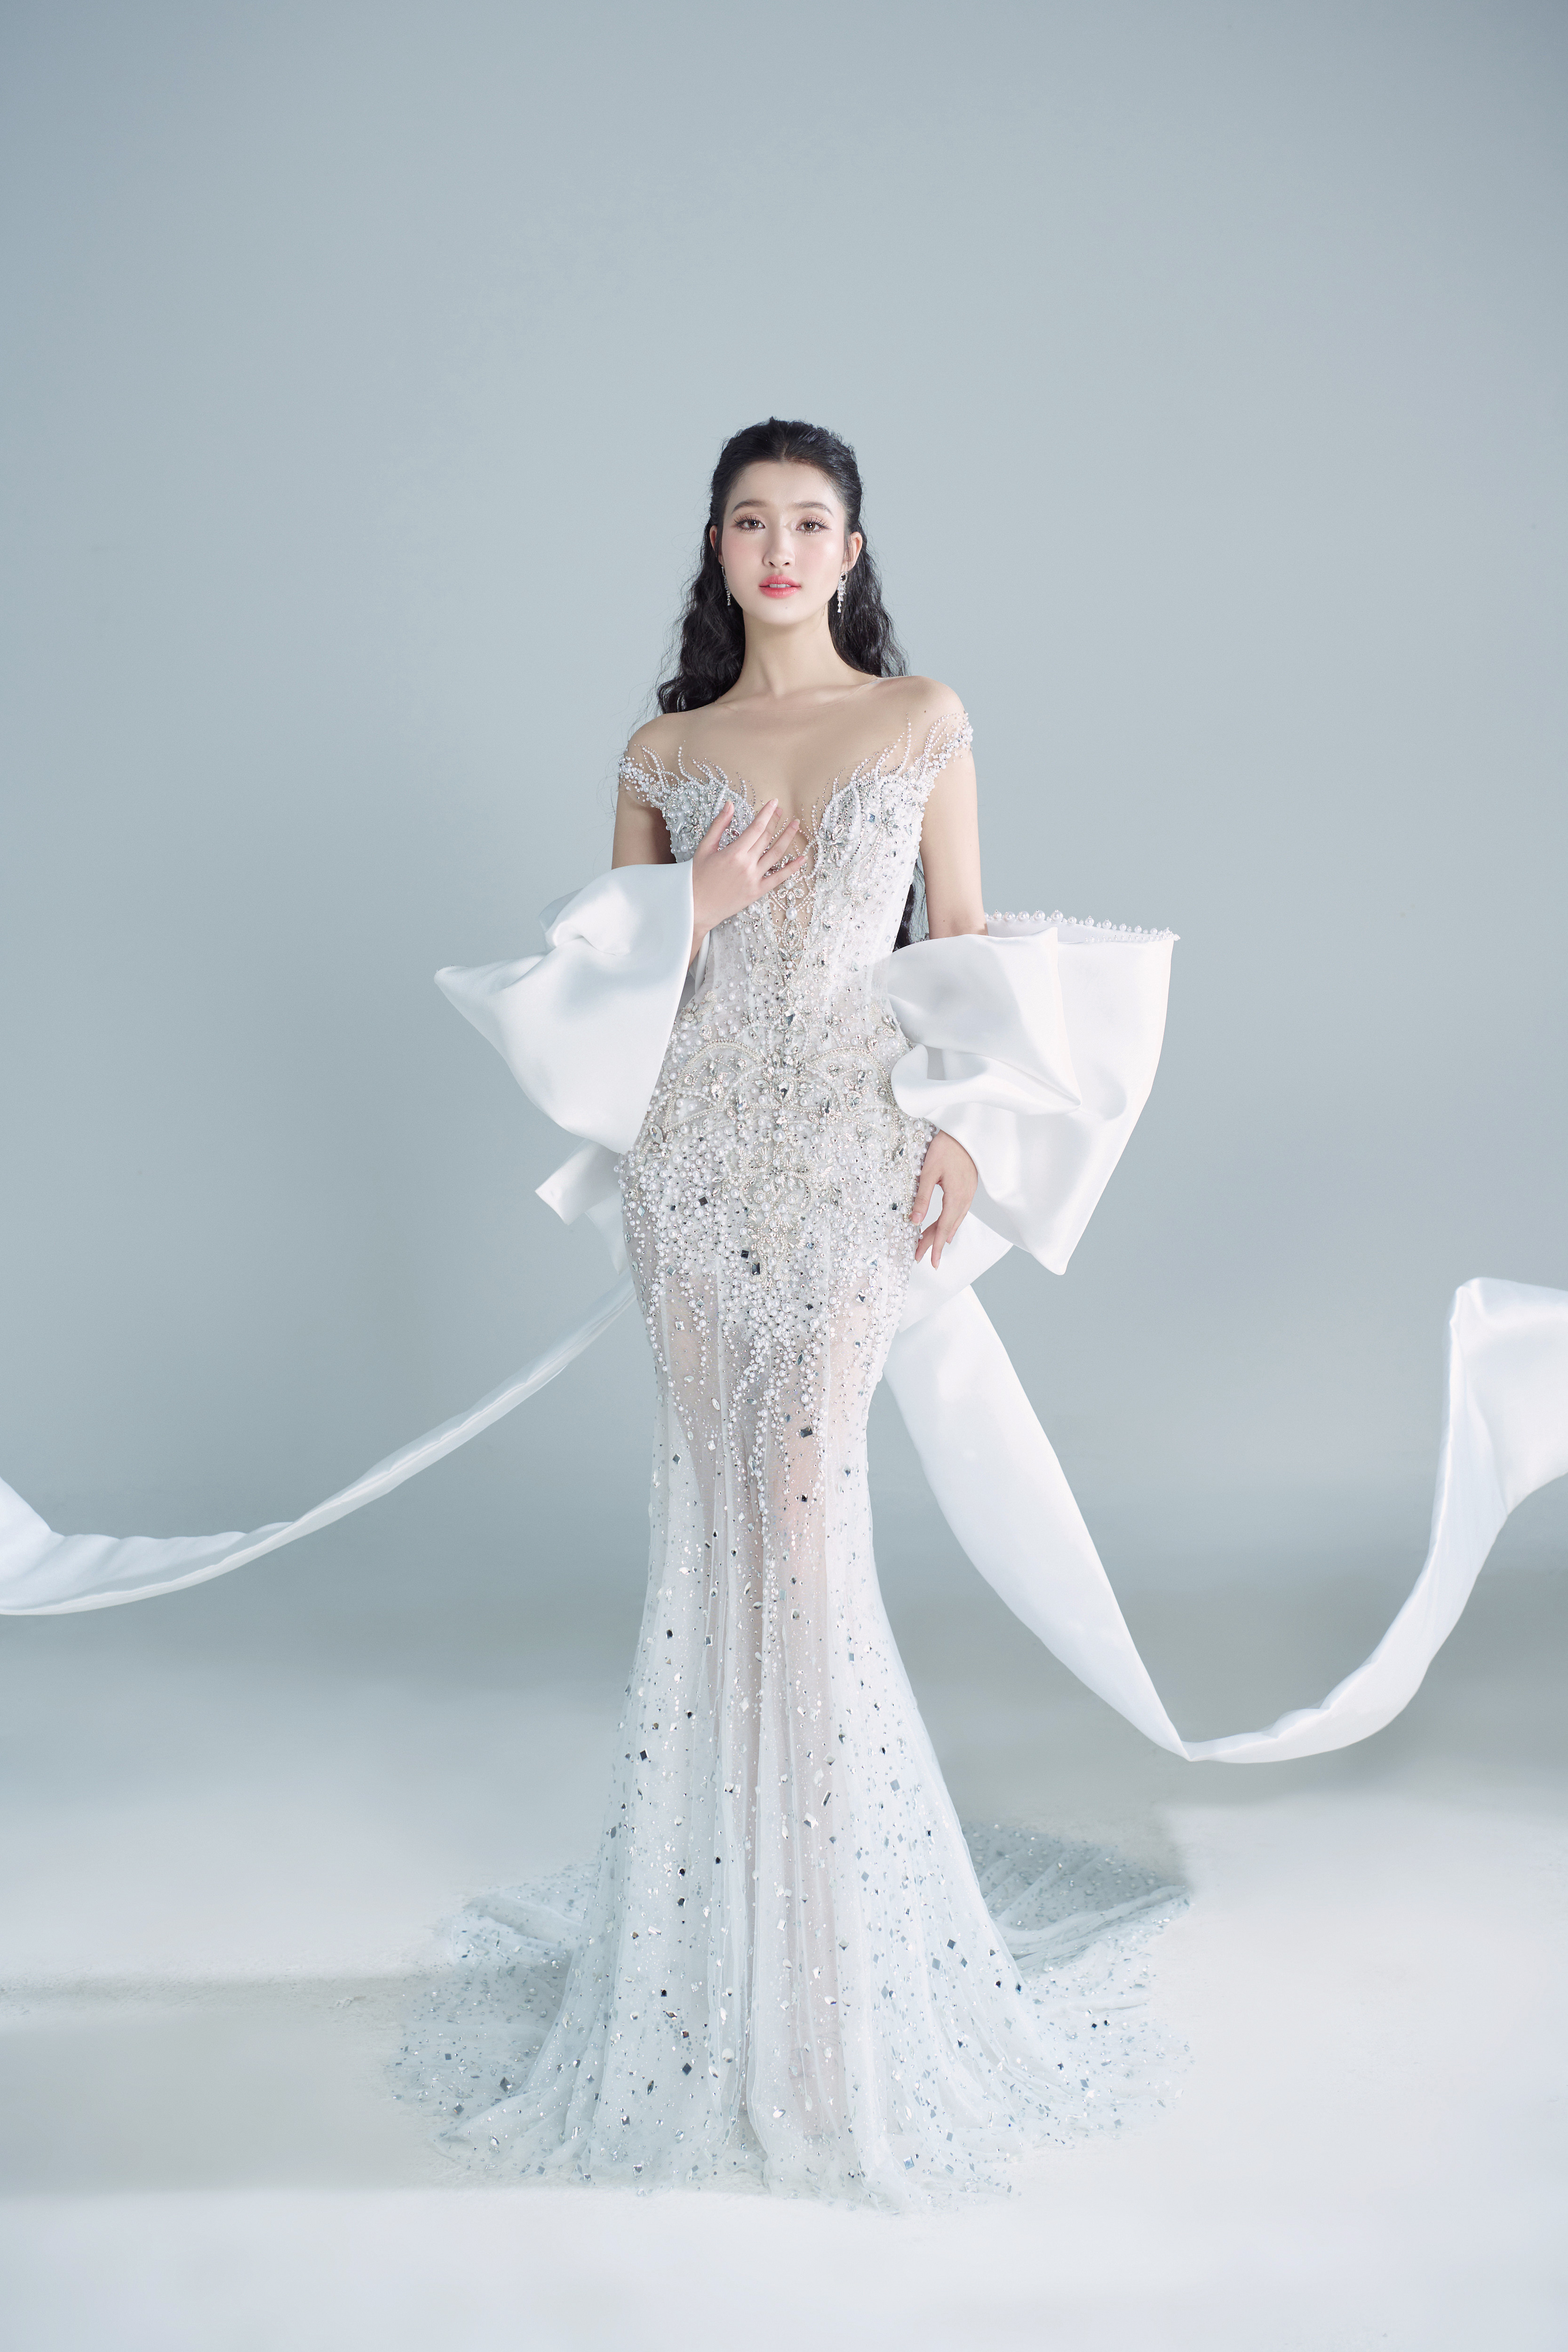 View - Phương Nhi hé lộ 2 thiết kế dạ hội cho đêm chung kết Miss International 2023